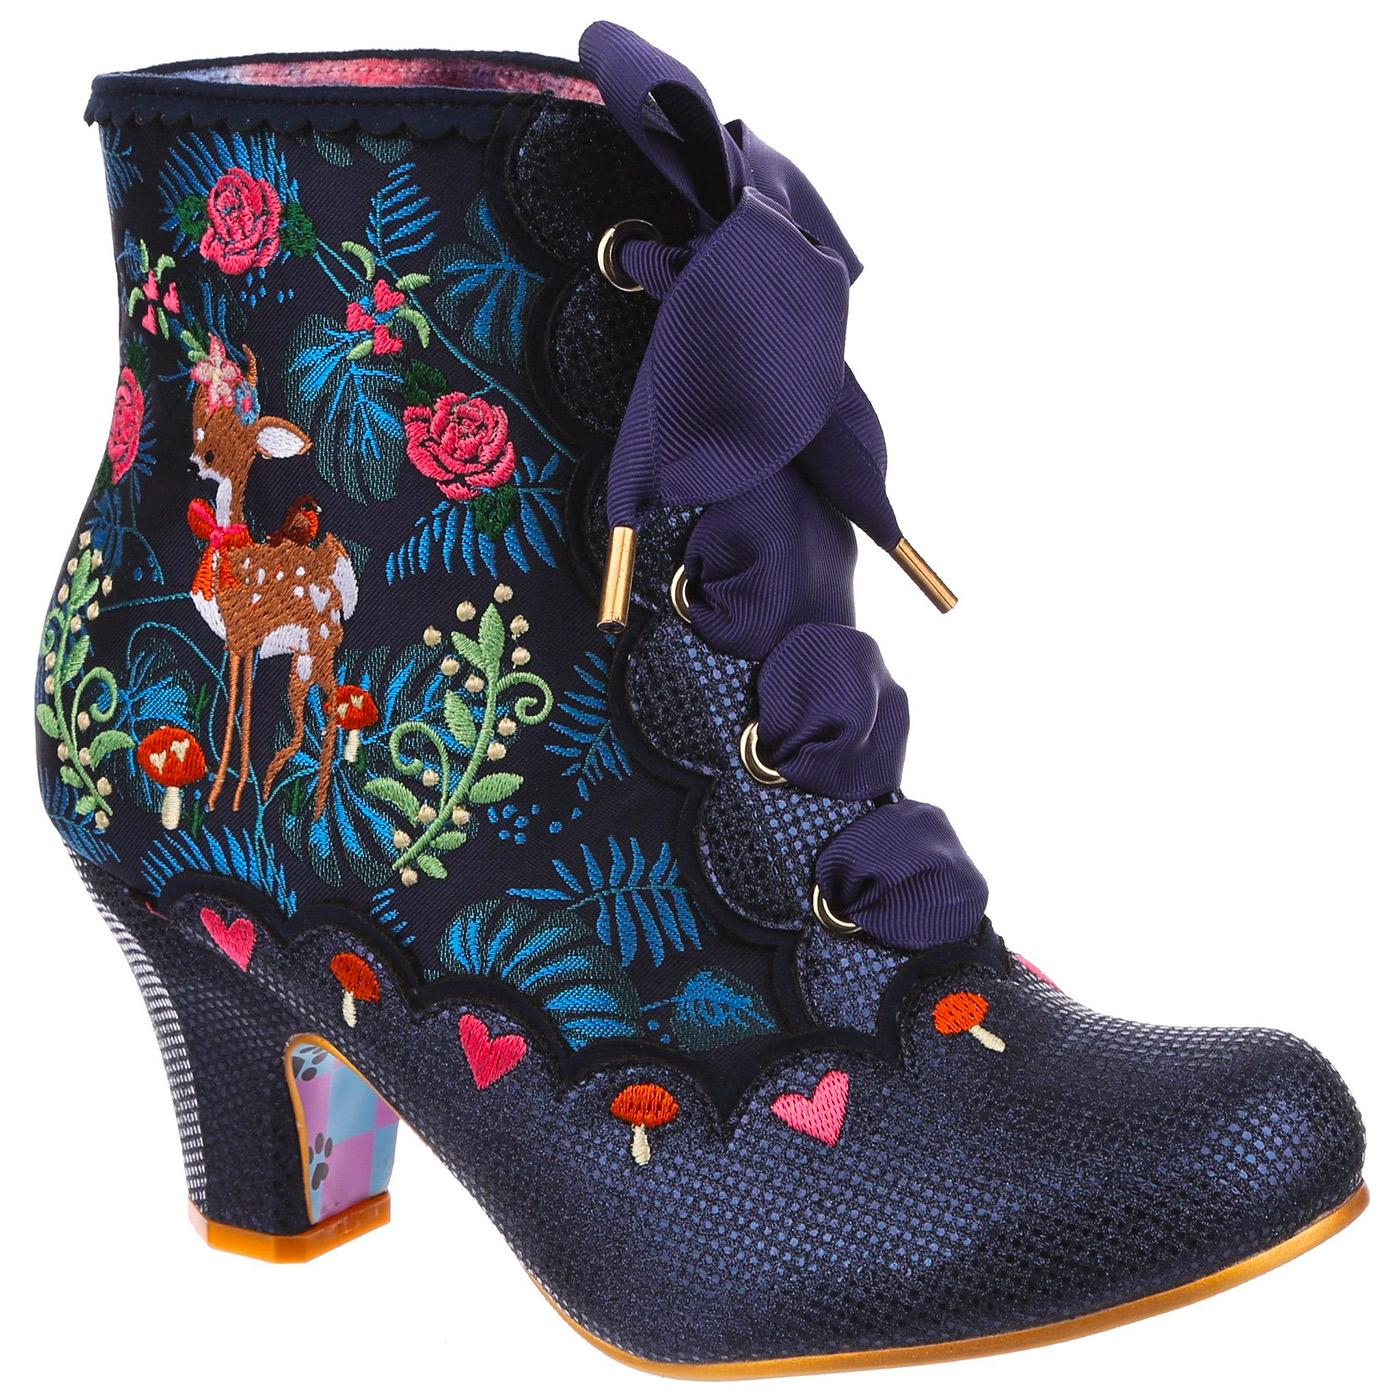 Forest Frolics IRREGULAR CHOICE Fox Boots (Blue)